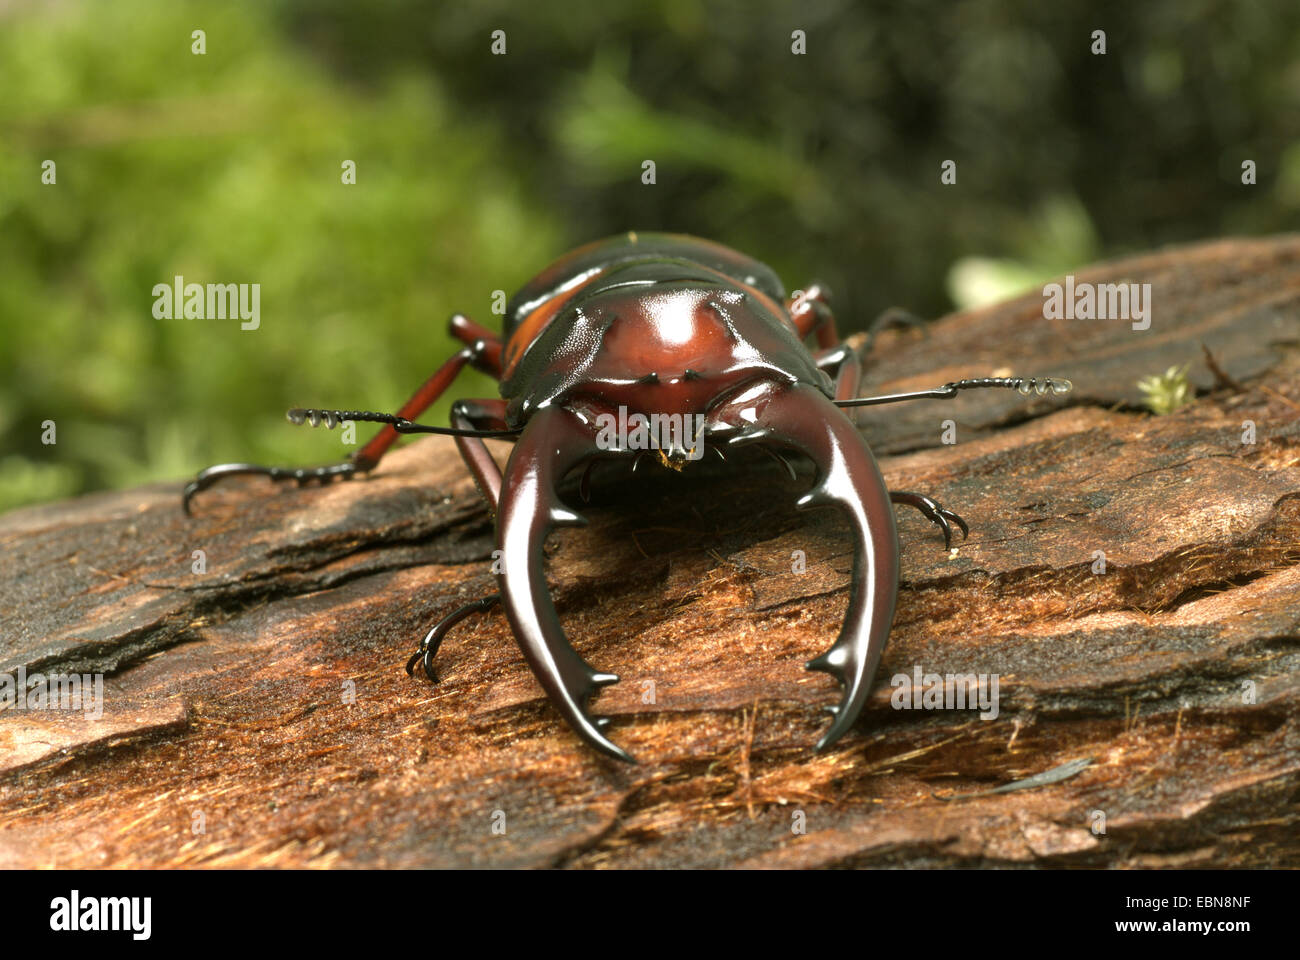 Stag beetle (Prosopocoilus mirabilis), il ritratto di un maschio Foto Stock